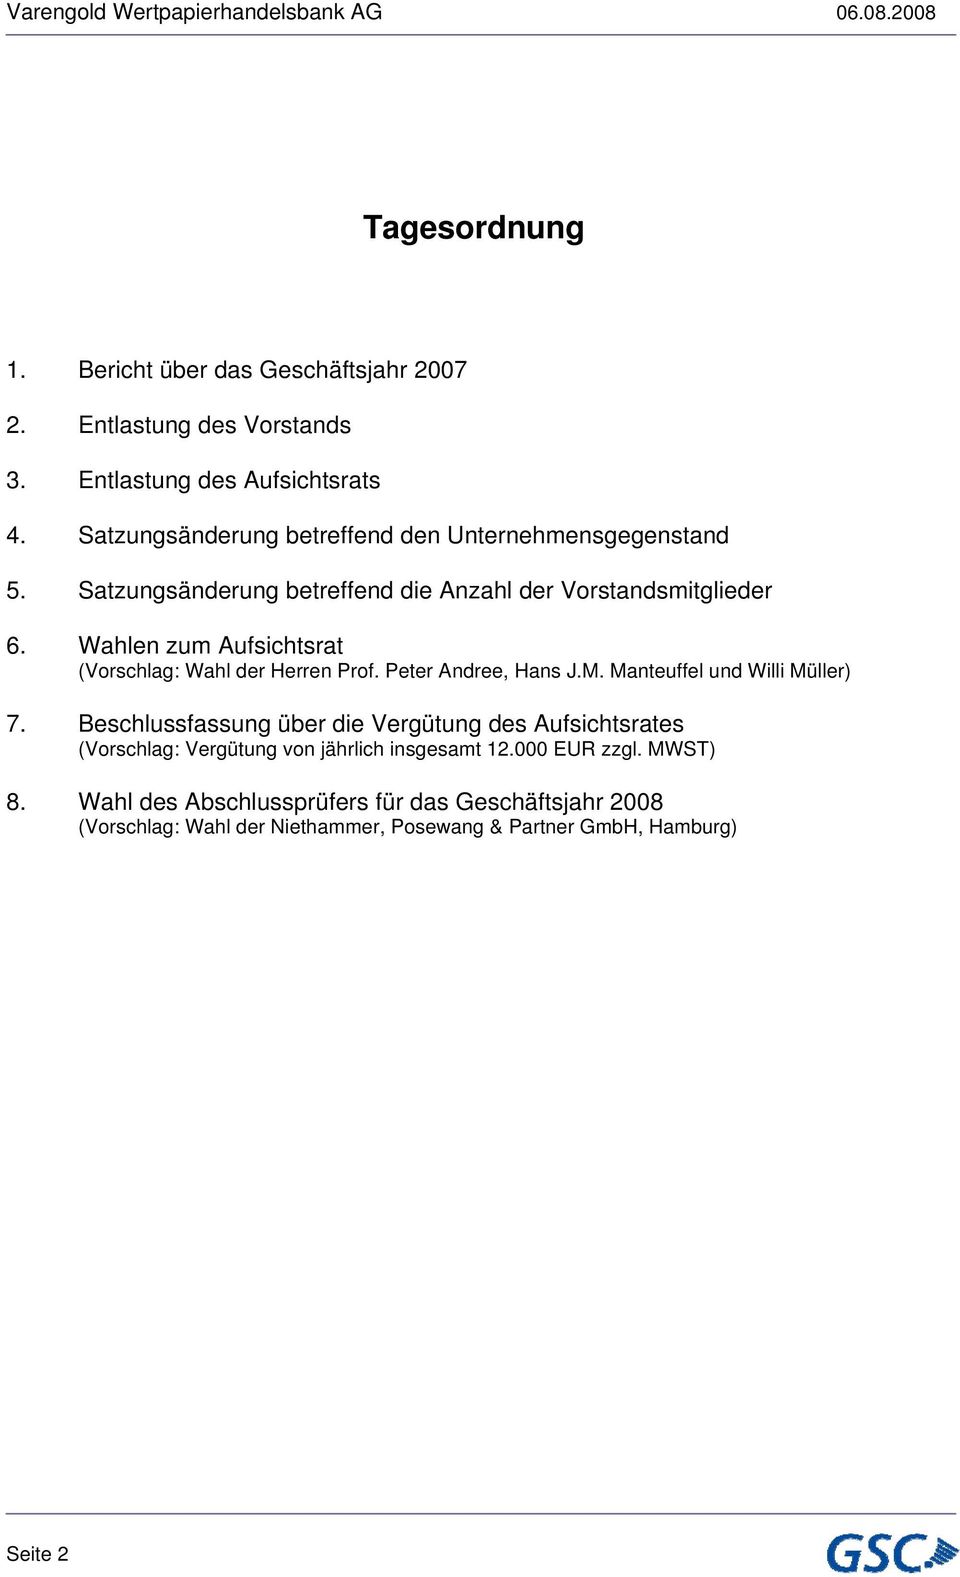 Wahlen zum Aufsichtsrat (Vorschlag: Wahl der Herren Prof. Peter Andree, Hans J.M. Manteuffel und Willi Müller) 7.